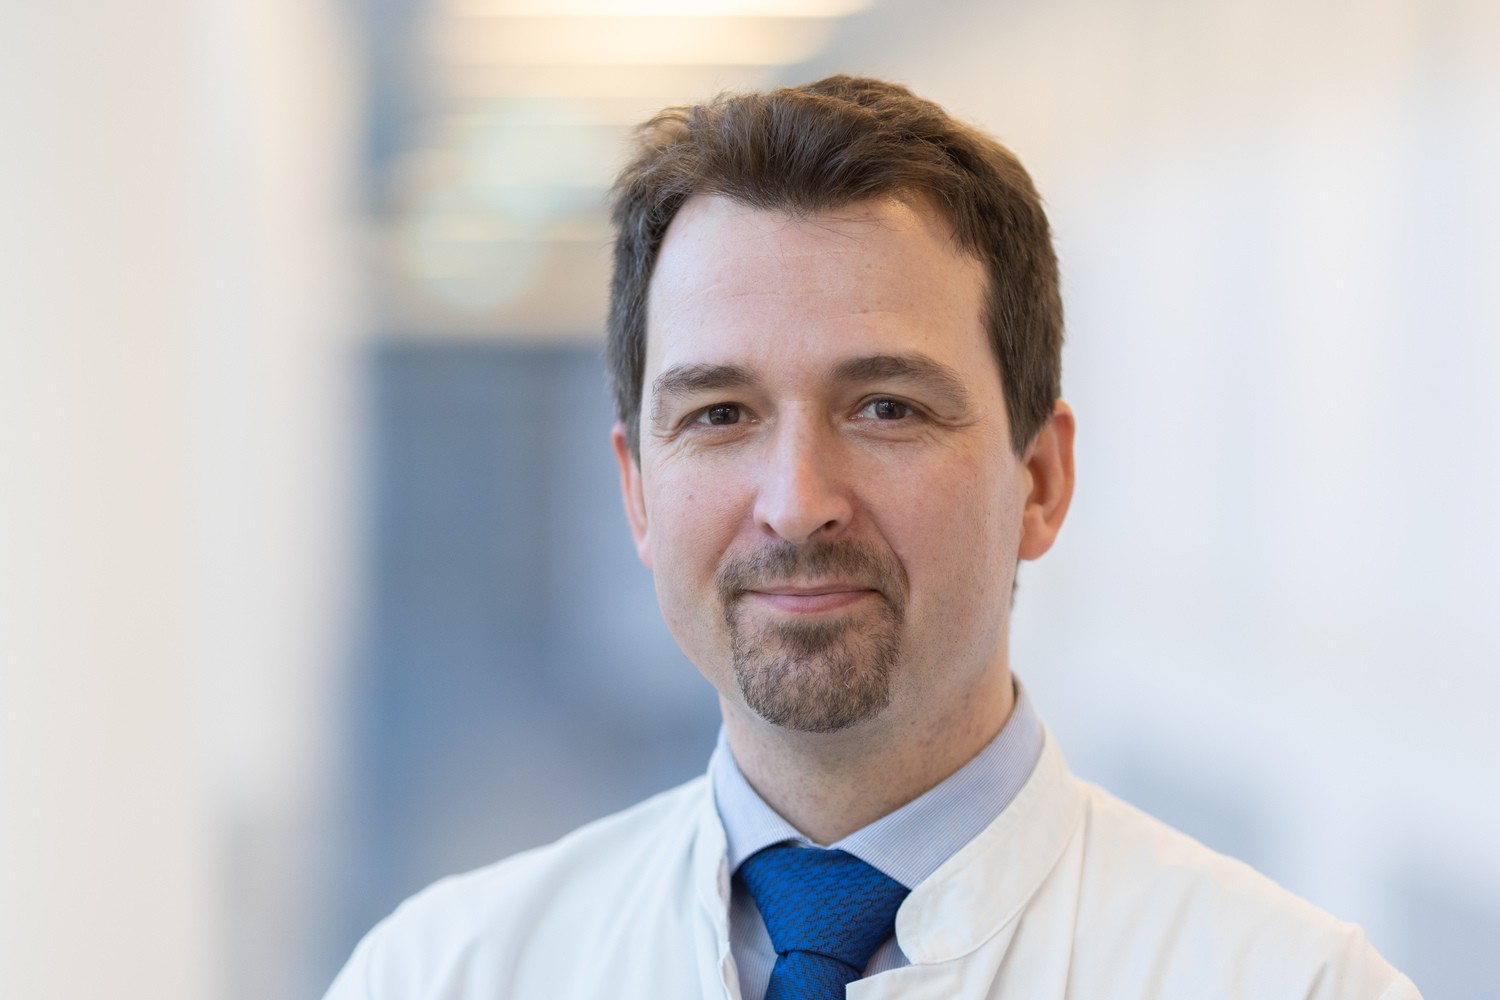 Prof. Christian Kleber leitet den Bereich für Unfallchirurgie in der Klinik und Poliklinik für Orthopädie, Unfallchirurgie und plastische Chirurgie (OUP) am UKL.